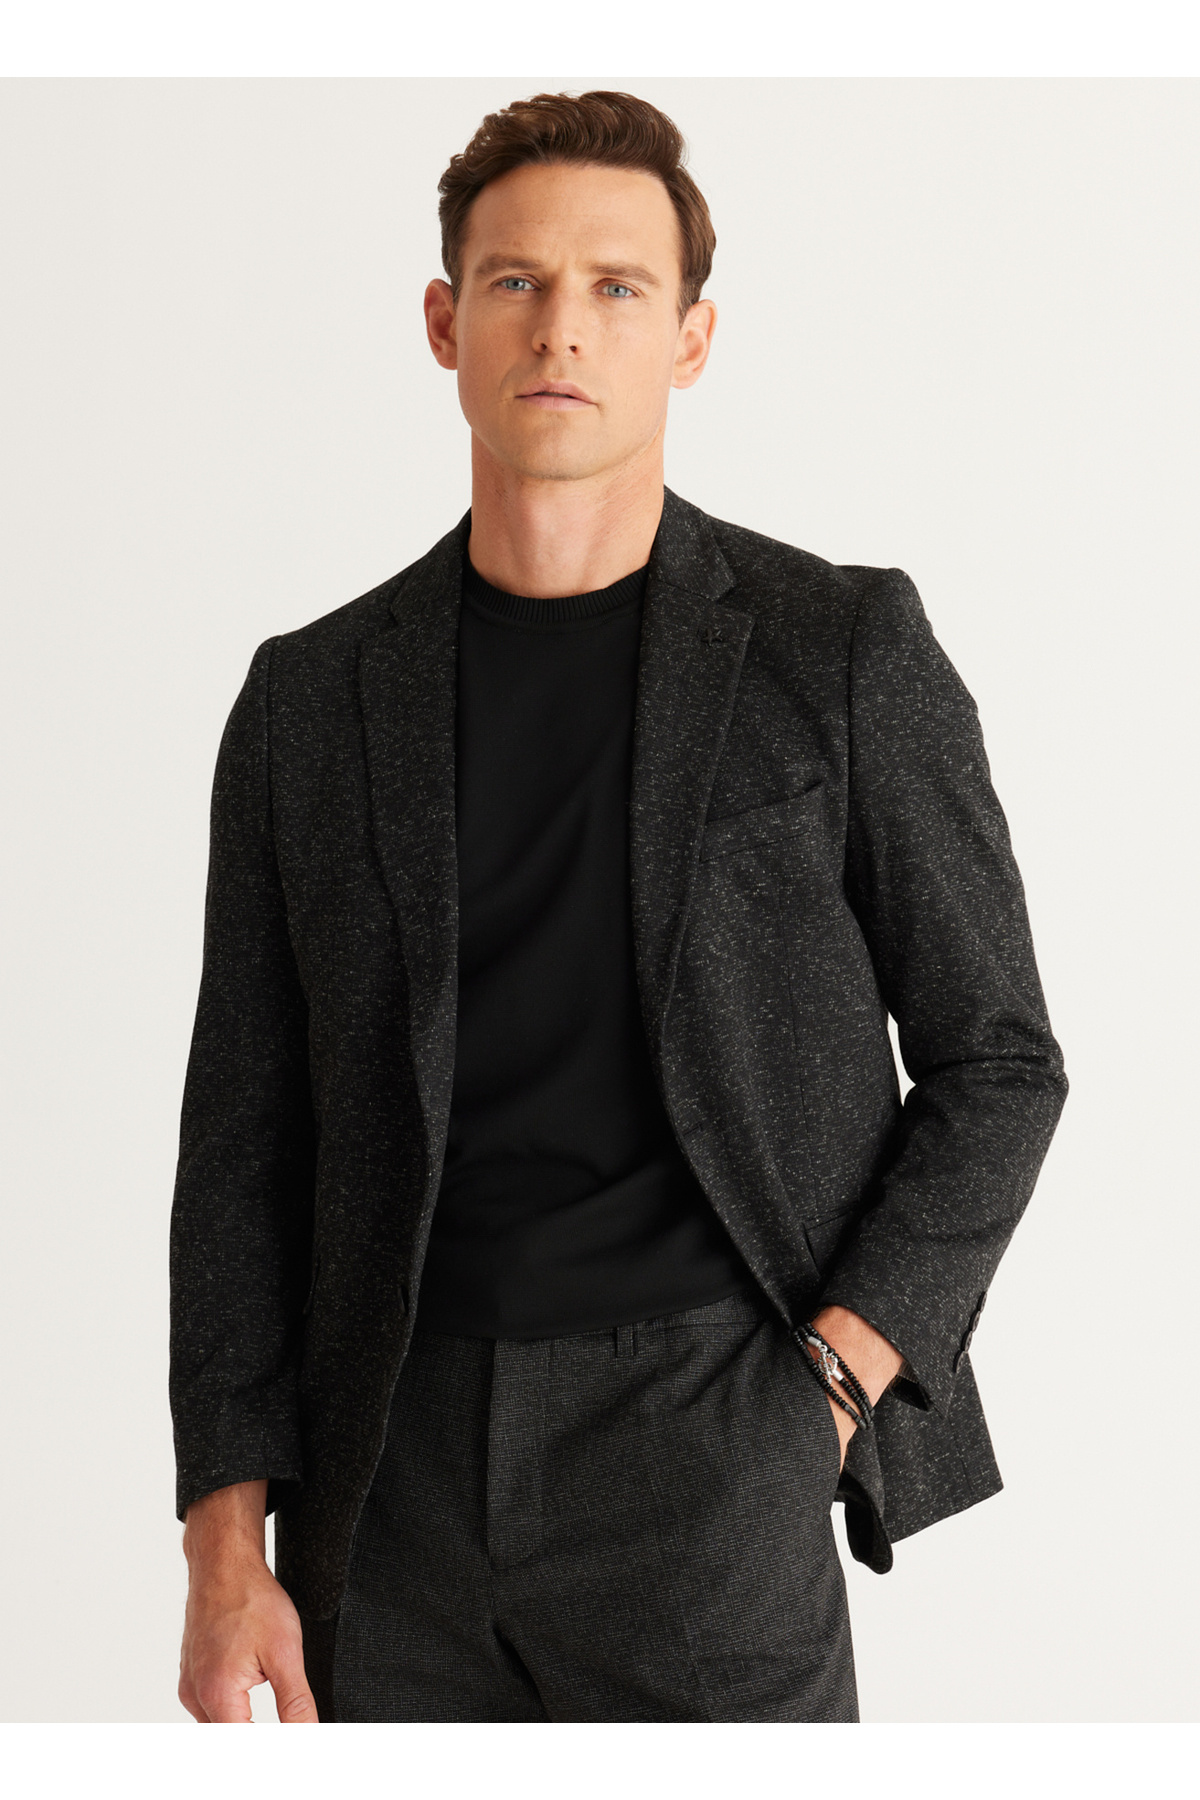 Levně ALTINYILDIZ CLASSICS Altinyıldız Classics Regular Fit Wide Cut Mono Collar Patterned Woolen Blazer Jacket